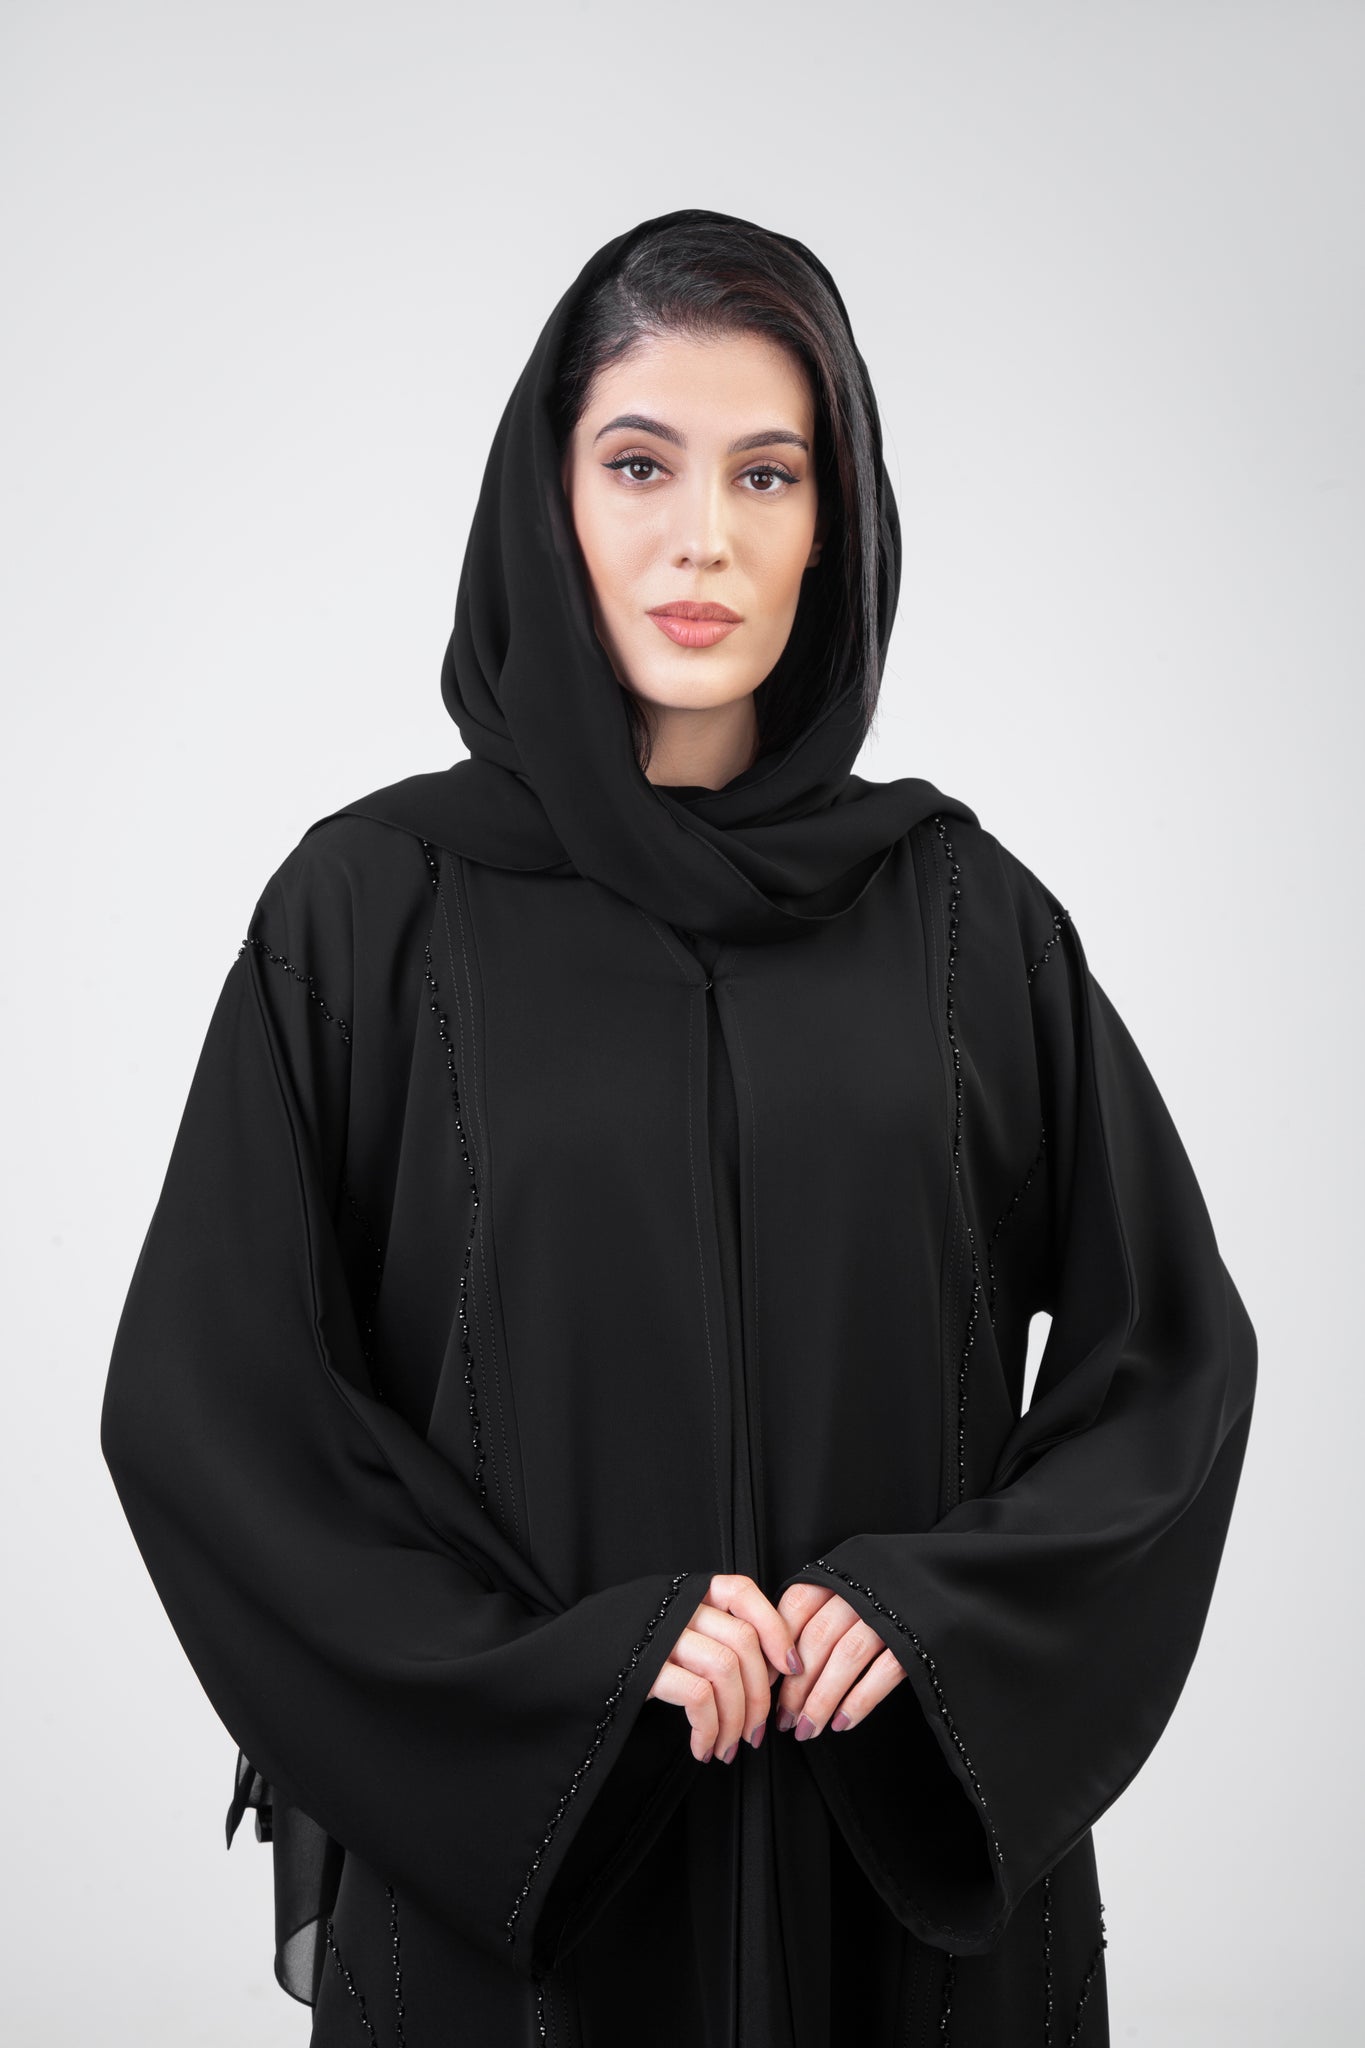 Bead Embellished Black Abaya